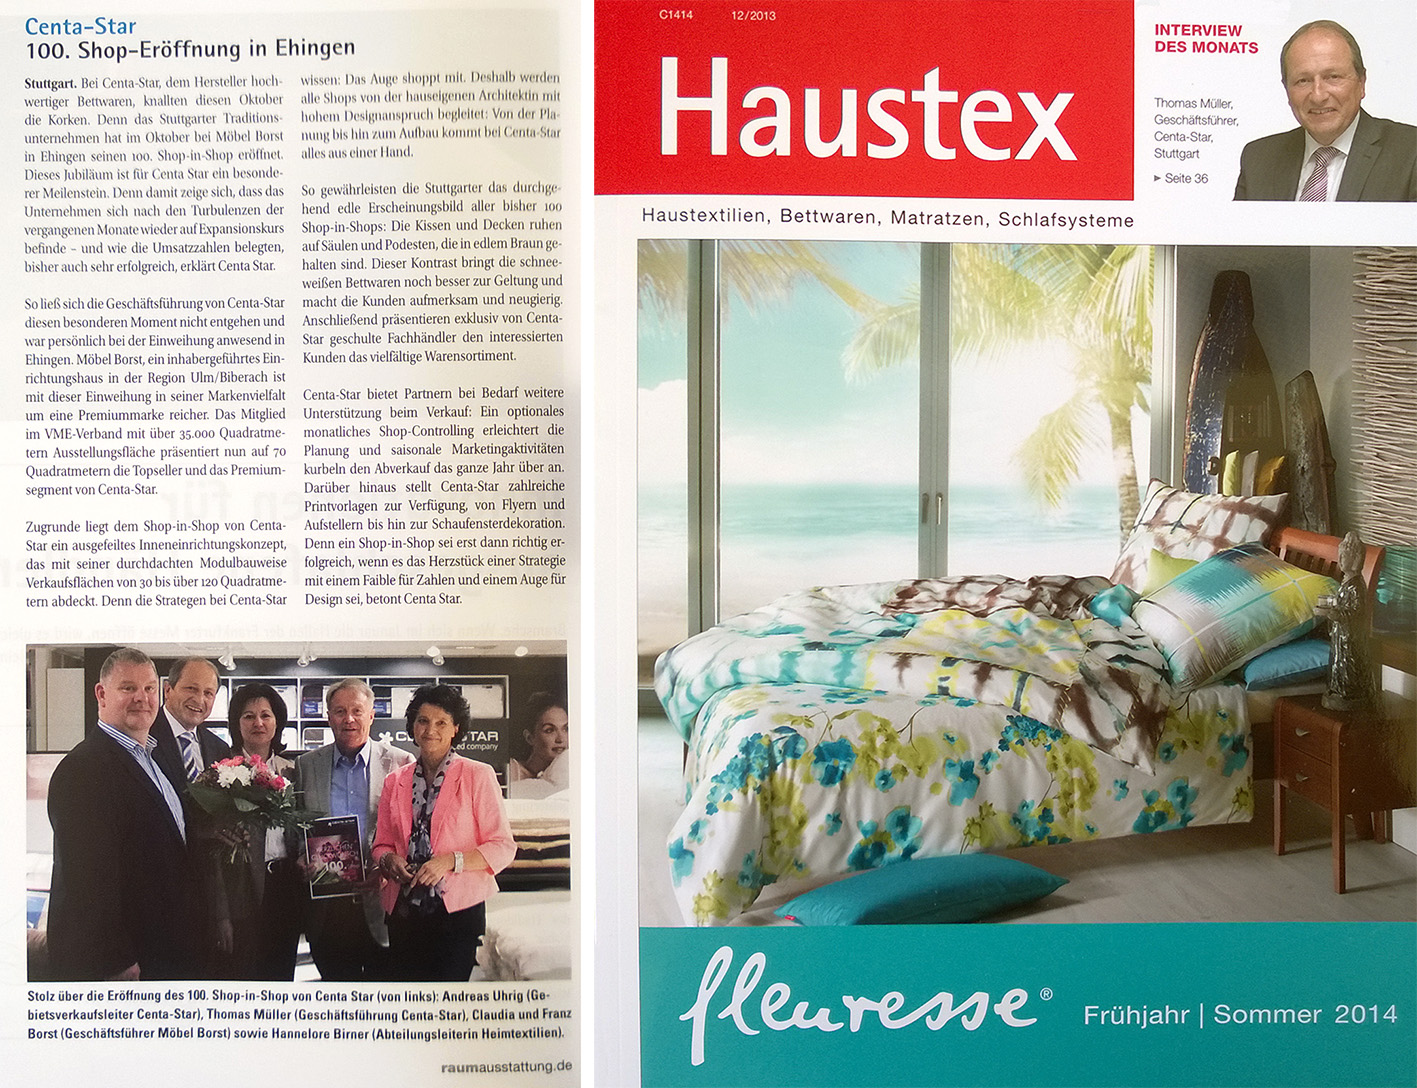 PR-Artikel über die 100ste Shoperöffnung von Centa-Star in der Haustex 12/2013